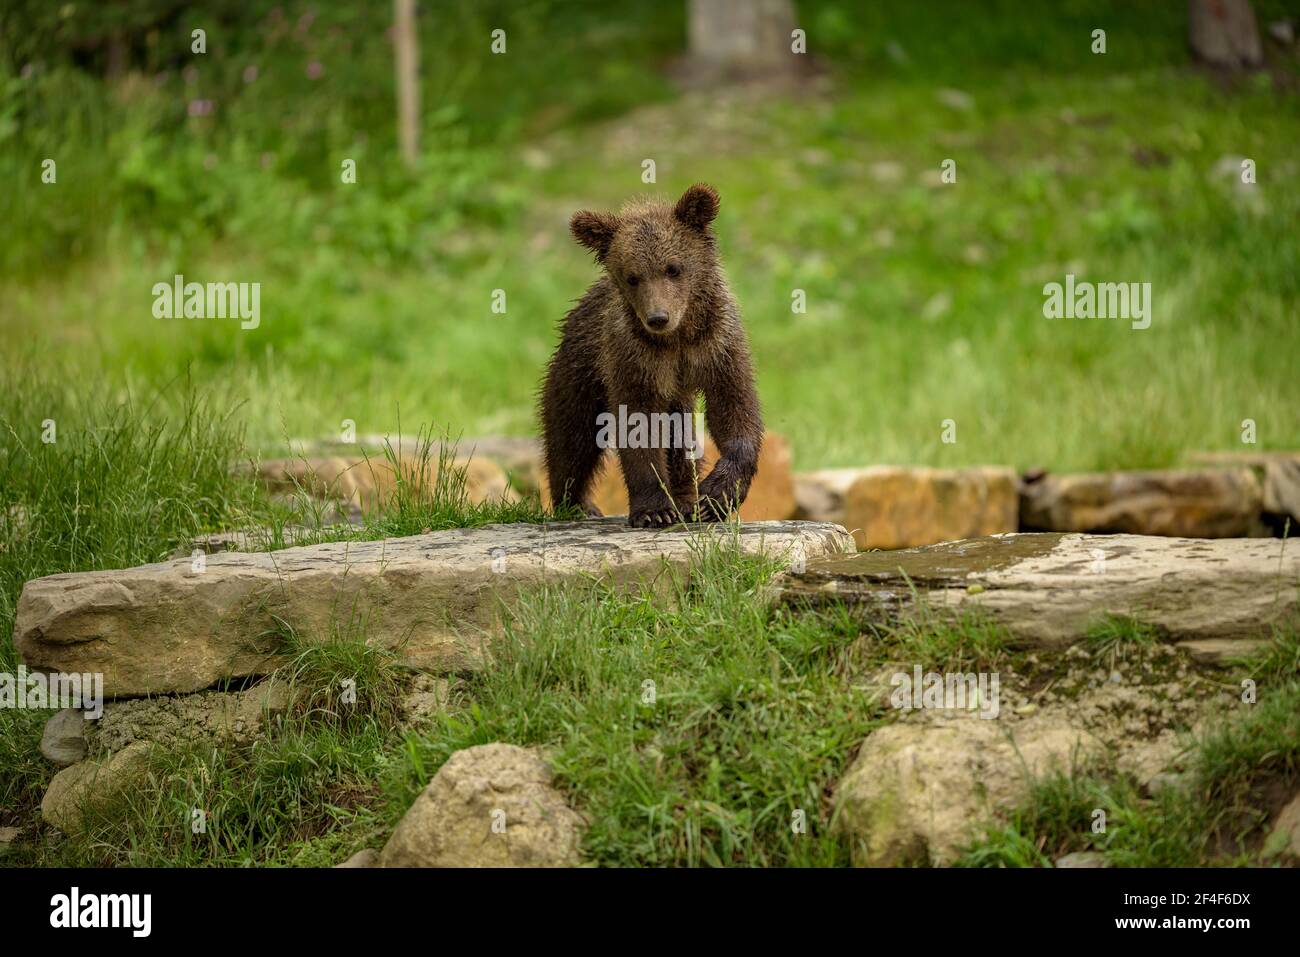 Braunbär (Ursus arctos) im Tierpark Aran (Aran-Tal, Katalonien, Pyrenäen, Spanien) ESP: Oso pardo del parque de animales Aran Park Stockfoto